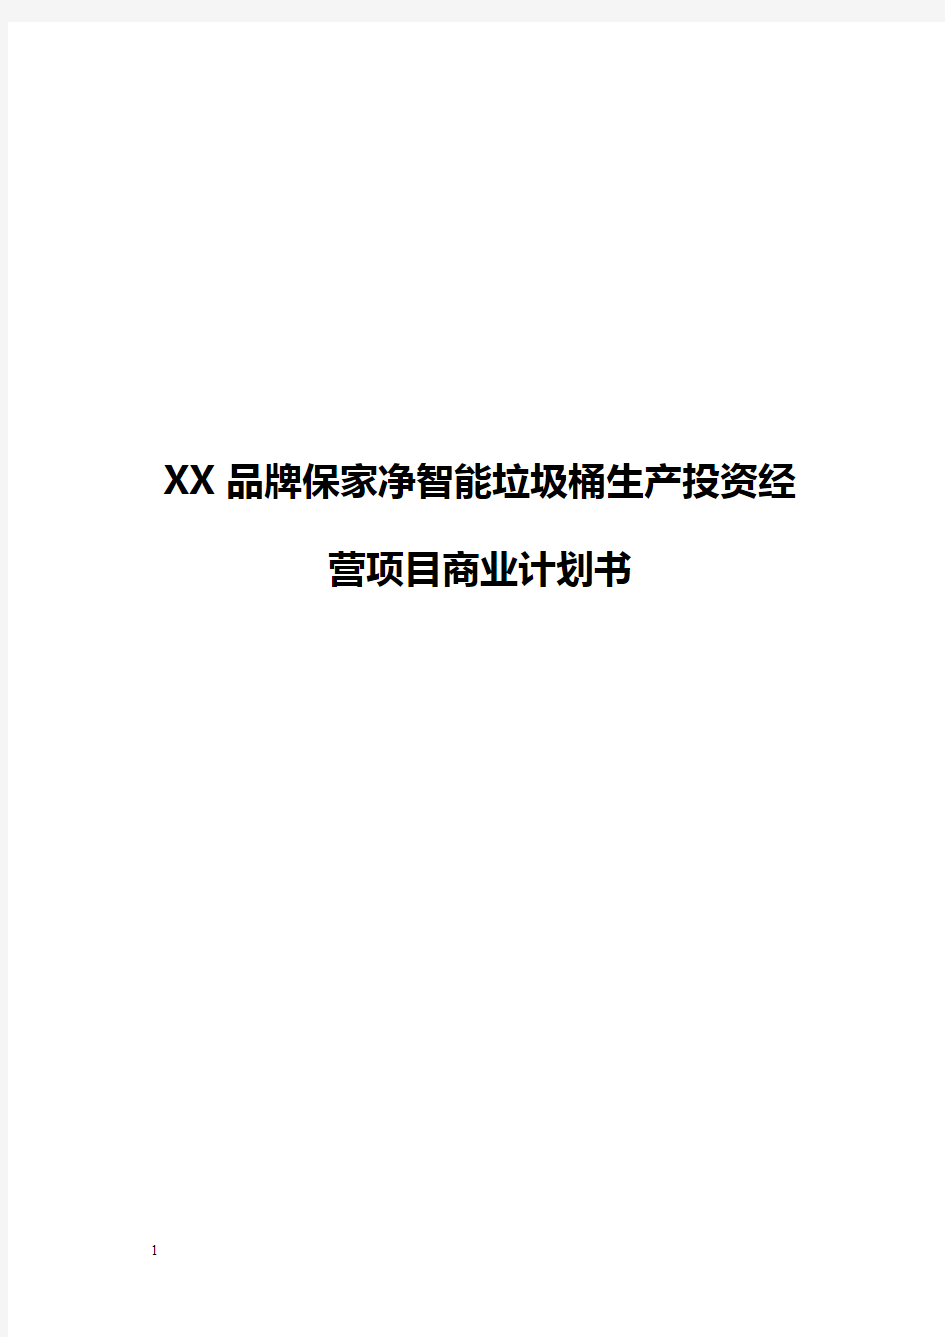 【精编】XX品牌保家净智能垃圾桶生产投资经营项目商业计划书